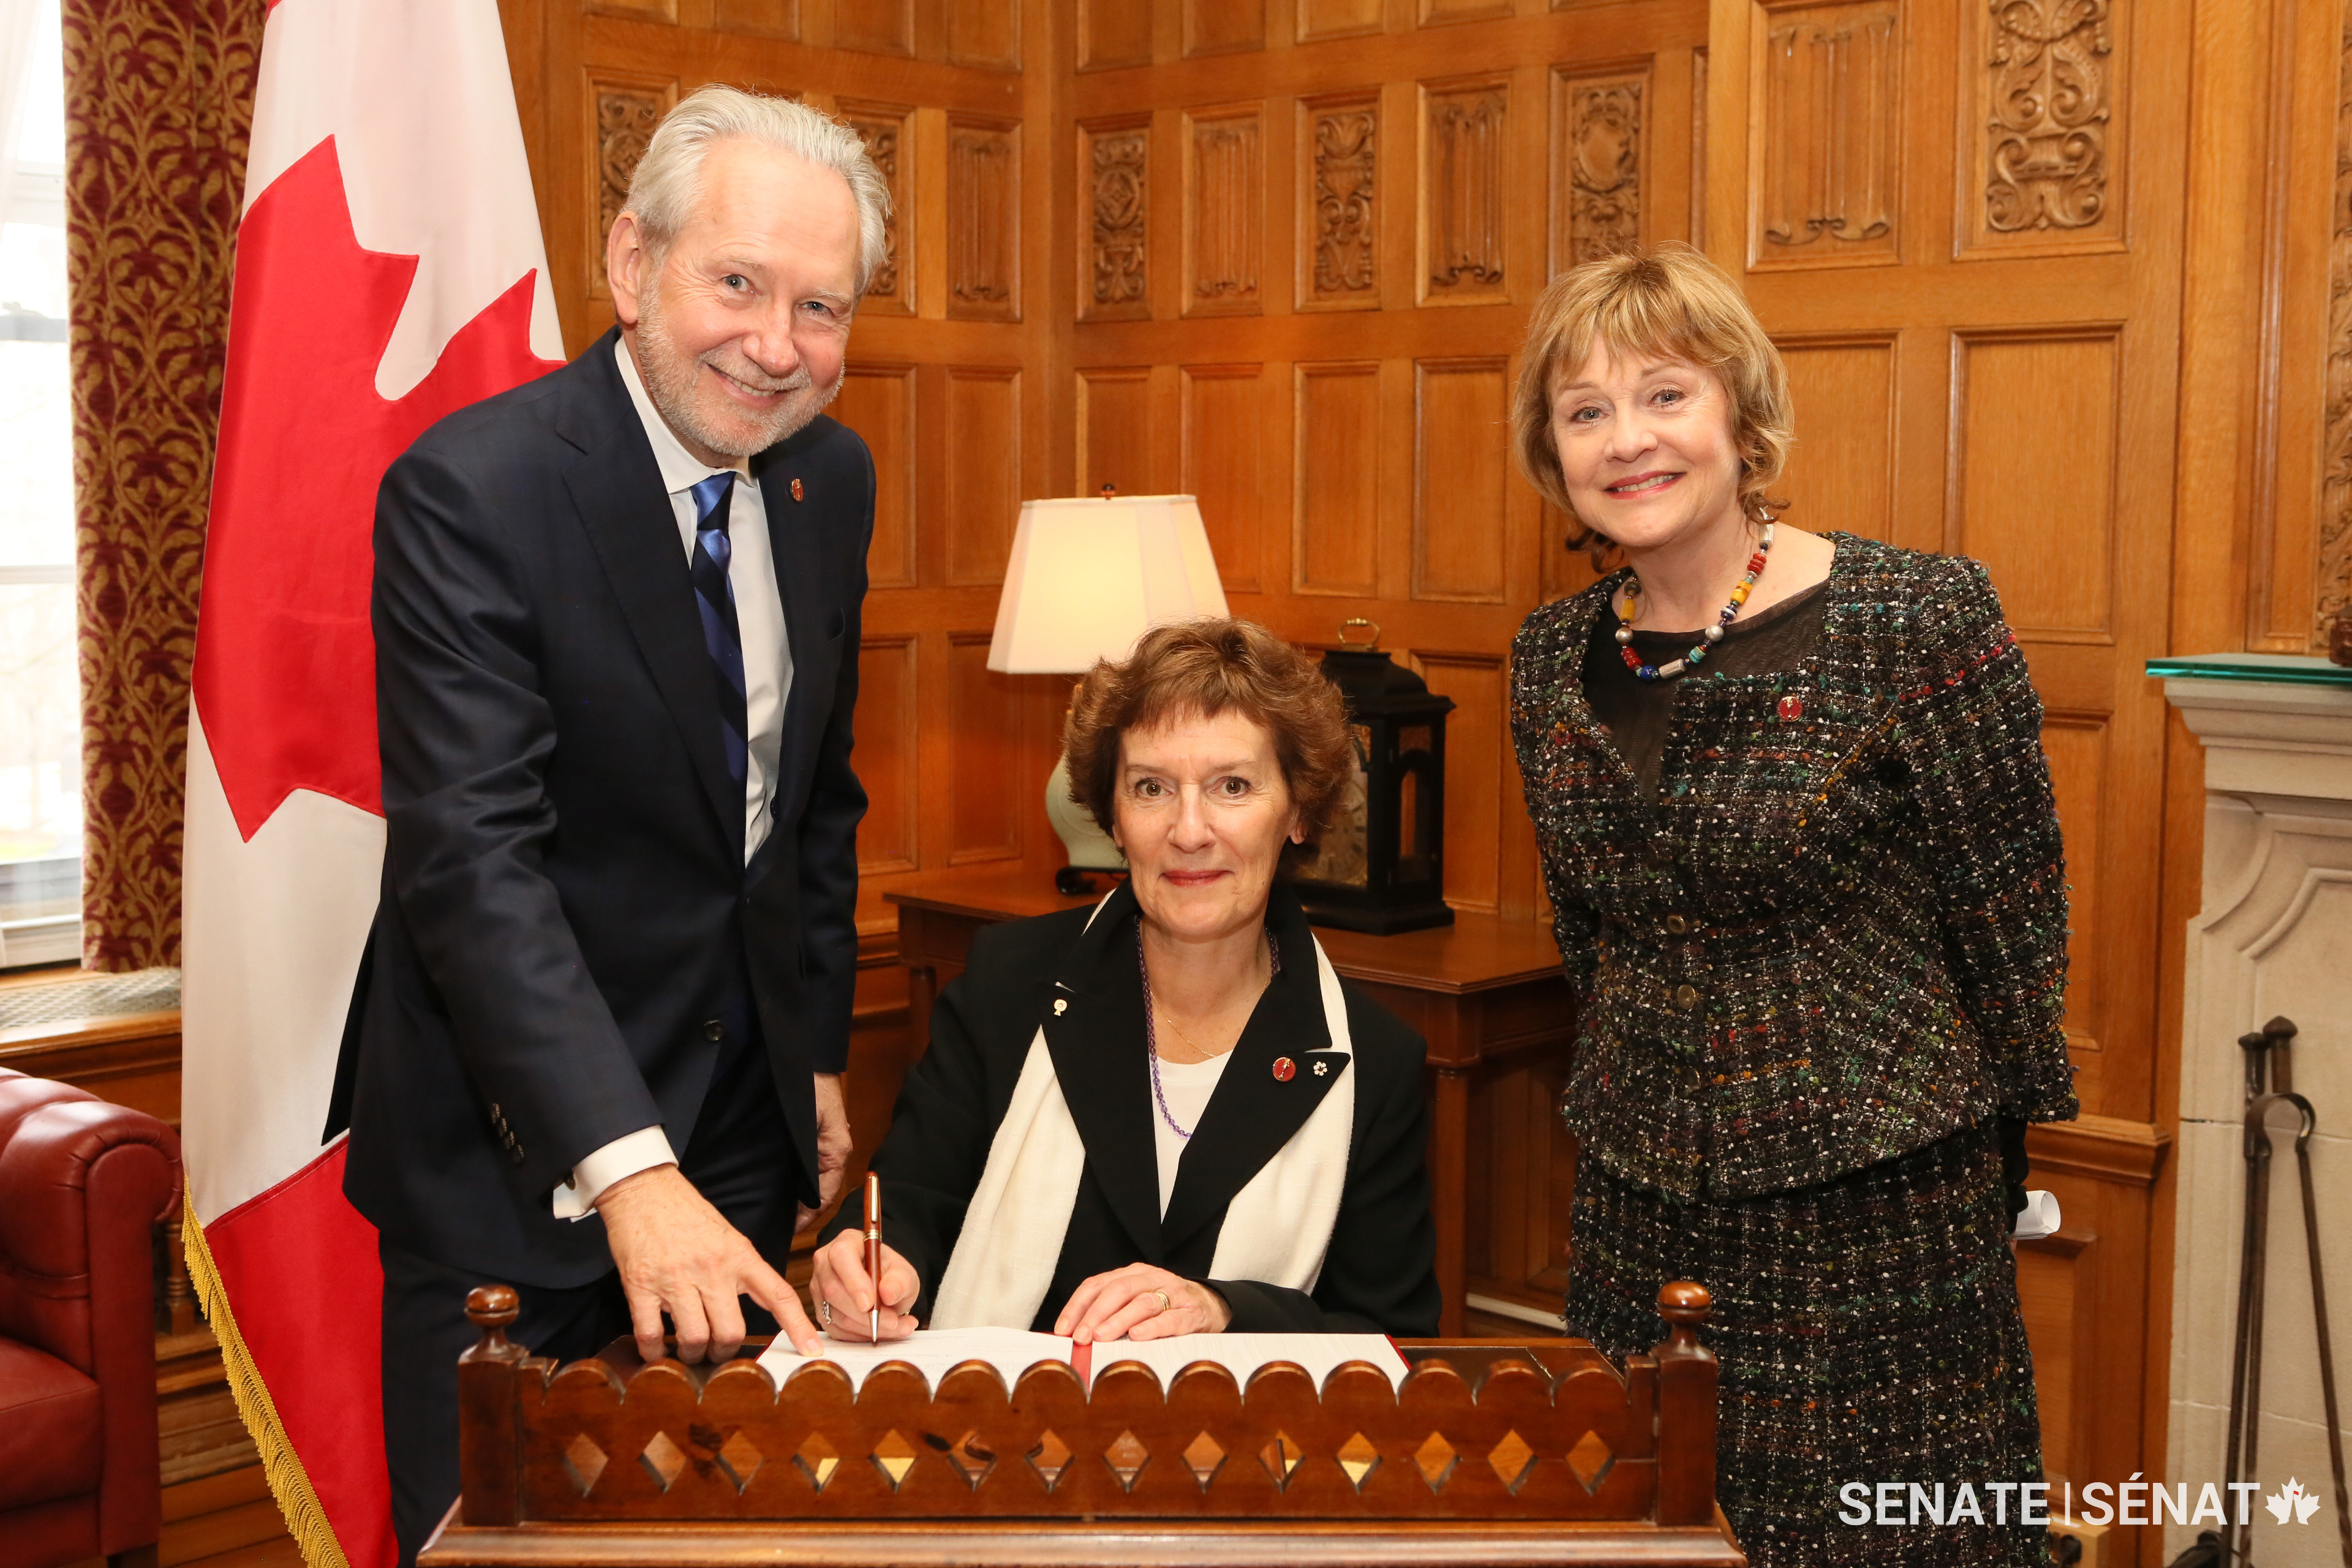 La sénatrice Renée Dupuis pose avec le sénateur Peter Harder et la sénatrice Diane Bellemare.